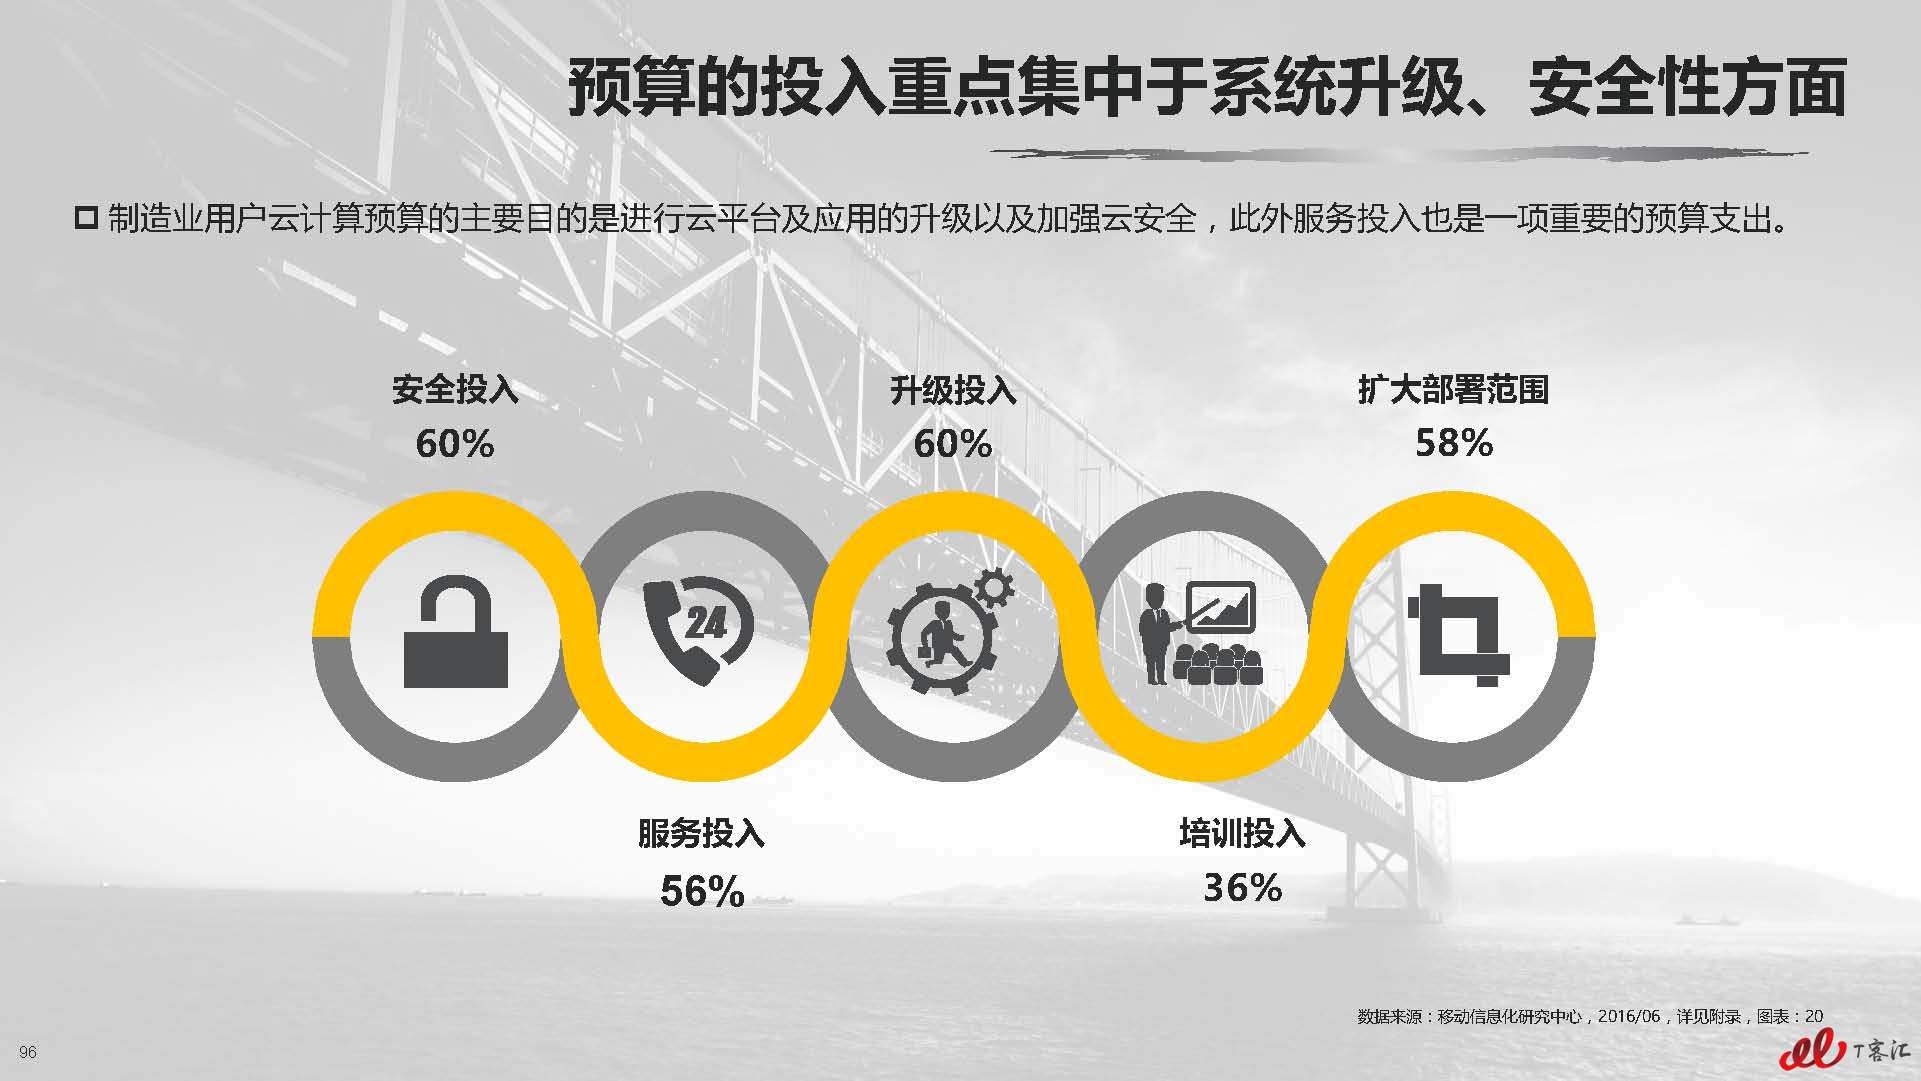 云计算中国市场实践专题研究报告vFNL_页面_097.jpg